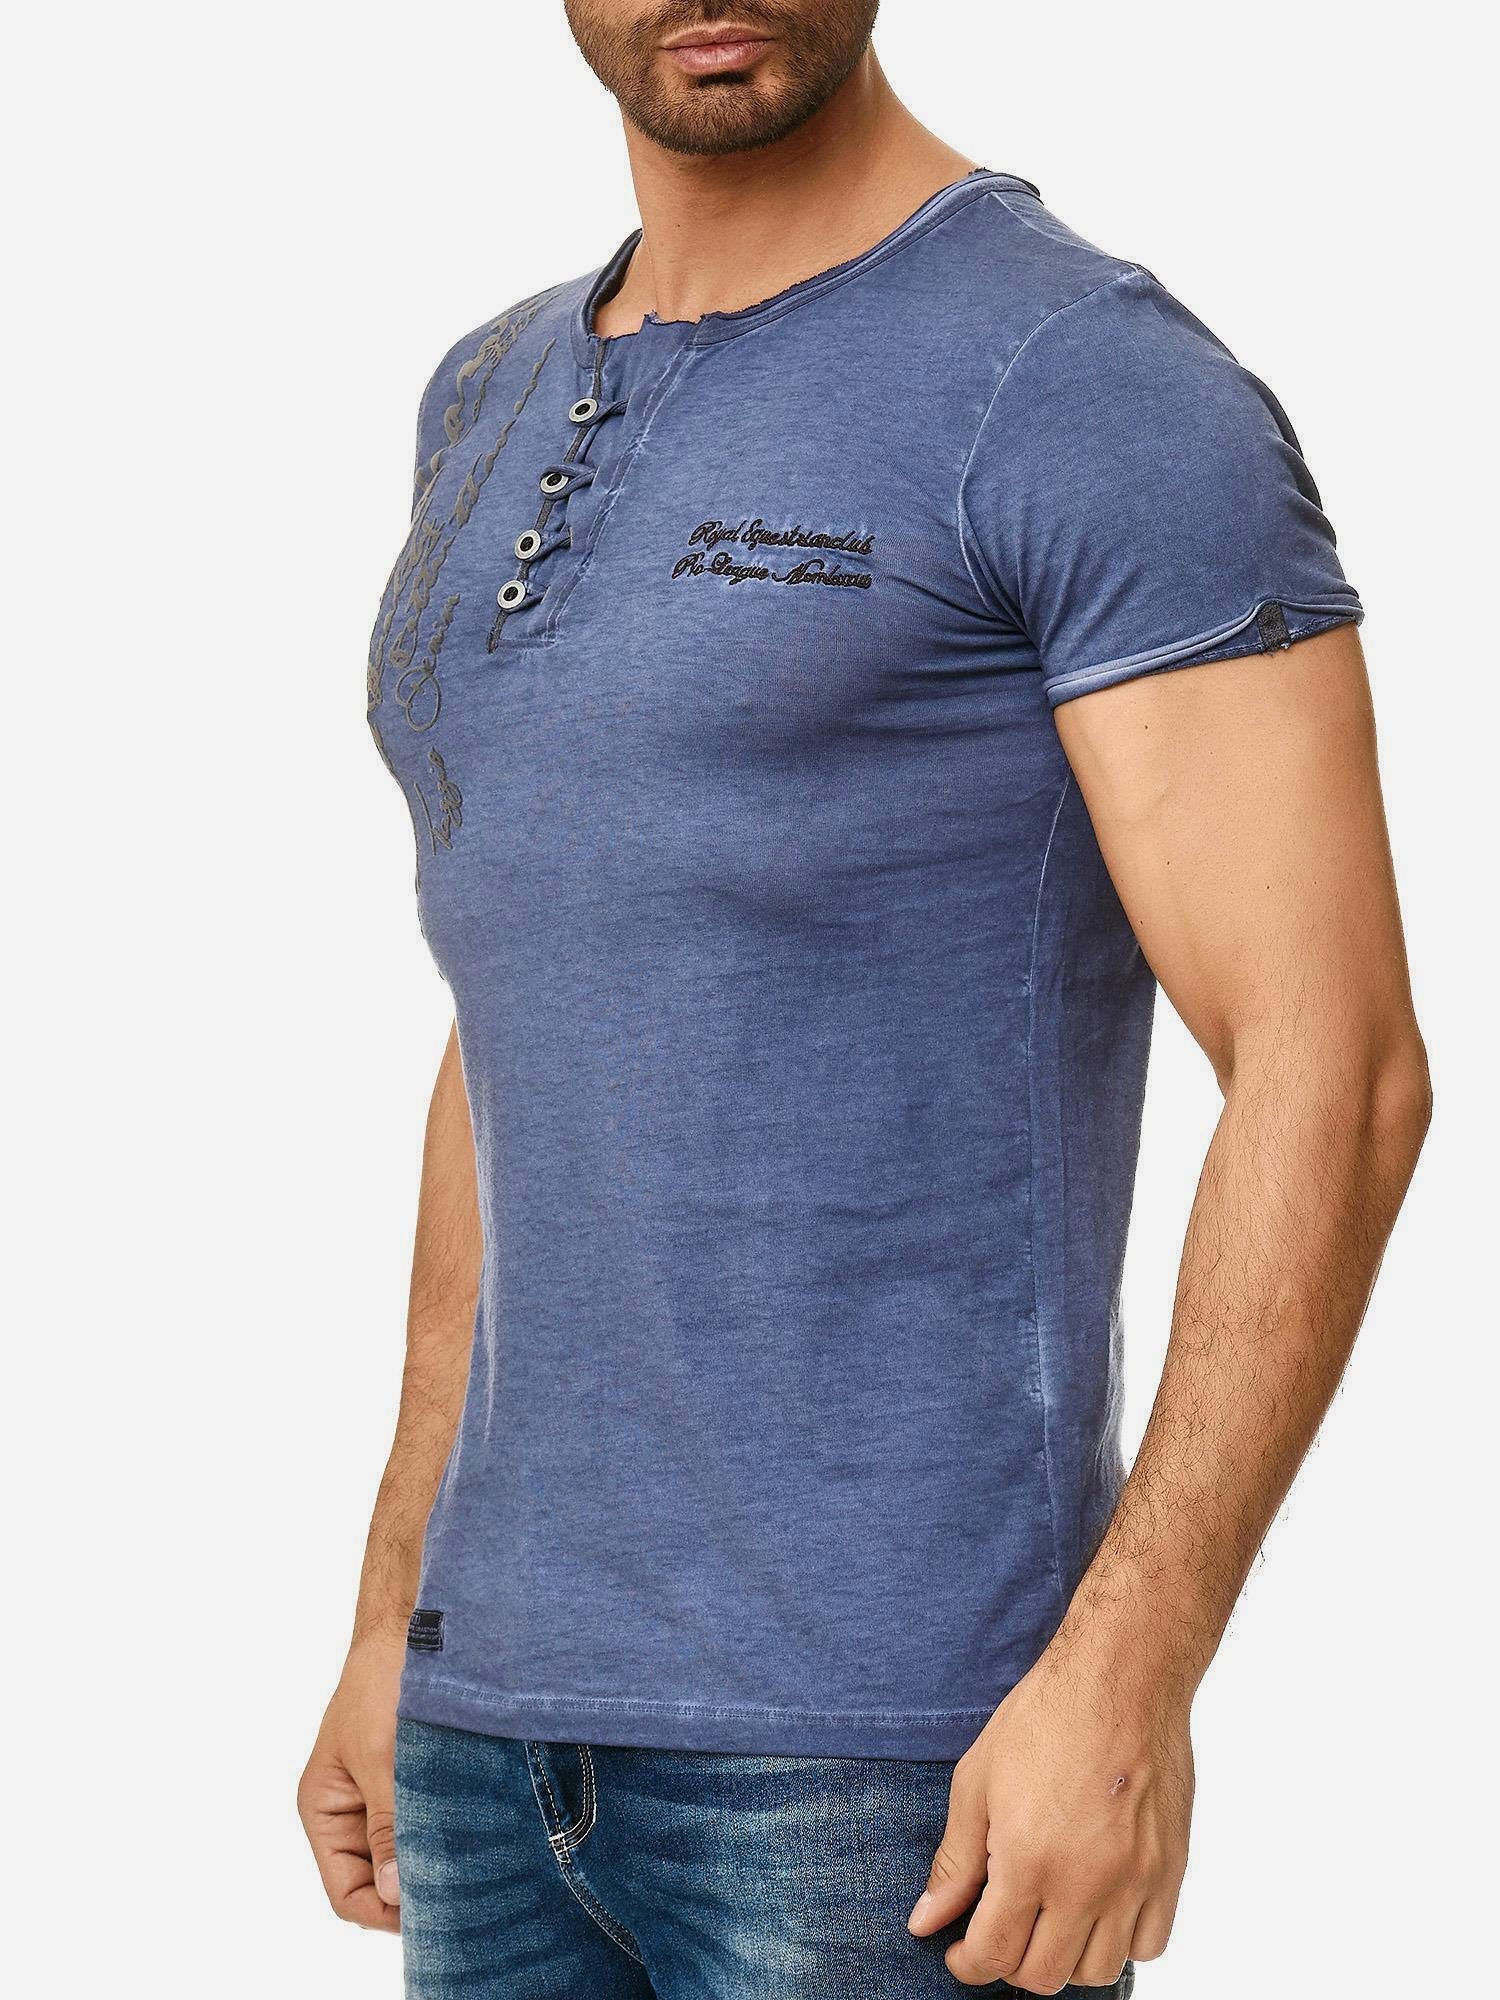 Tazzio T-Shirt 4050-1 Rundhalsshirt in Used offenem Look Kragen Ölwaschung dezentem mit navy und